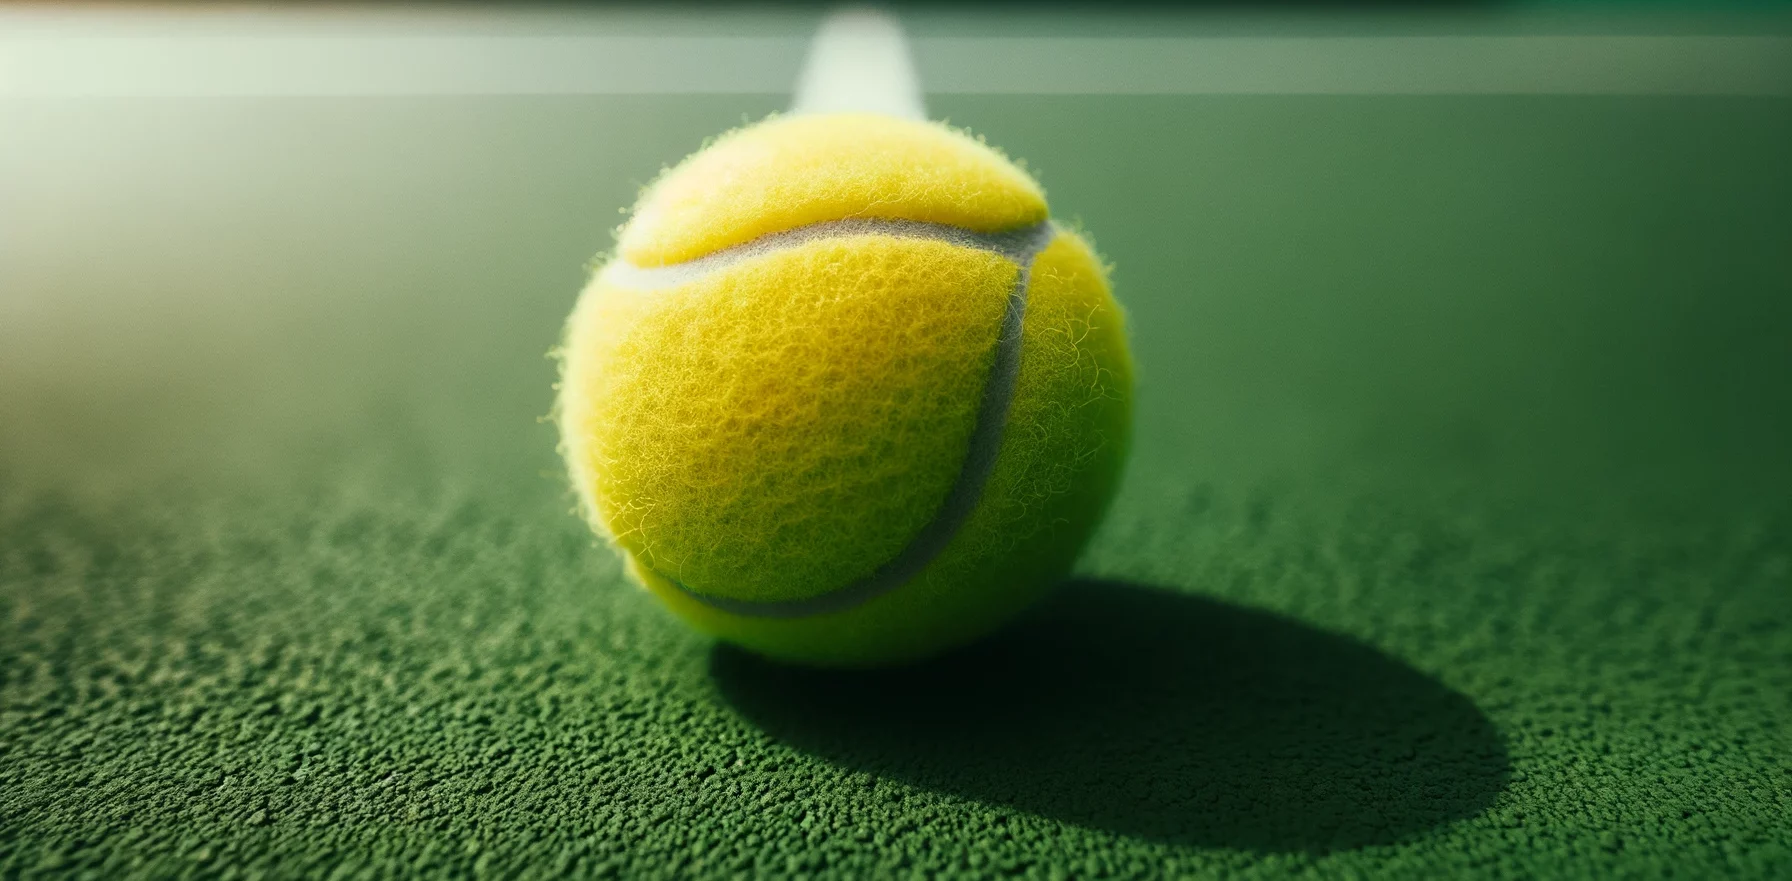 Foto einer Nahaufnahme eines neuen Tennisballs auf einem frisch gestrichenen Tennisplatz. Die Textur des Balls ist sichtbar und das helle Grün des Platzes kontrastiert mit dem Gelb des Balls